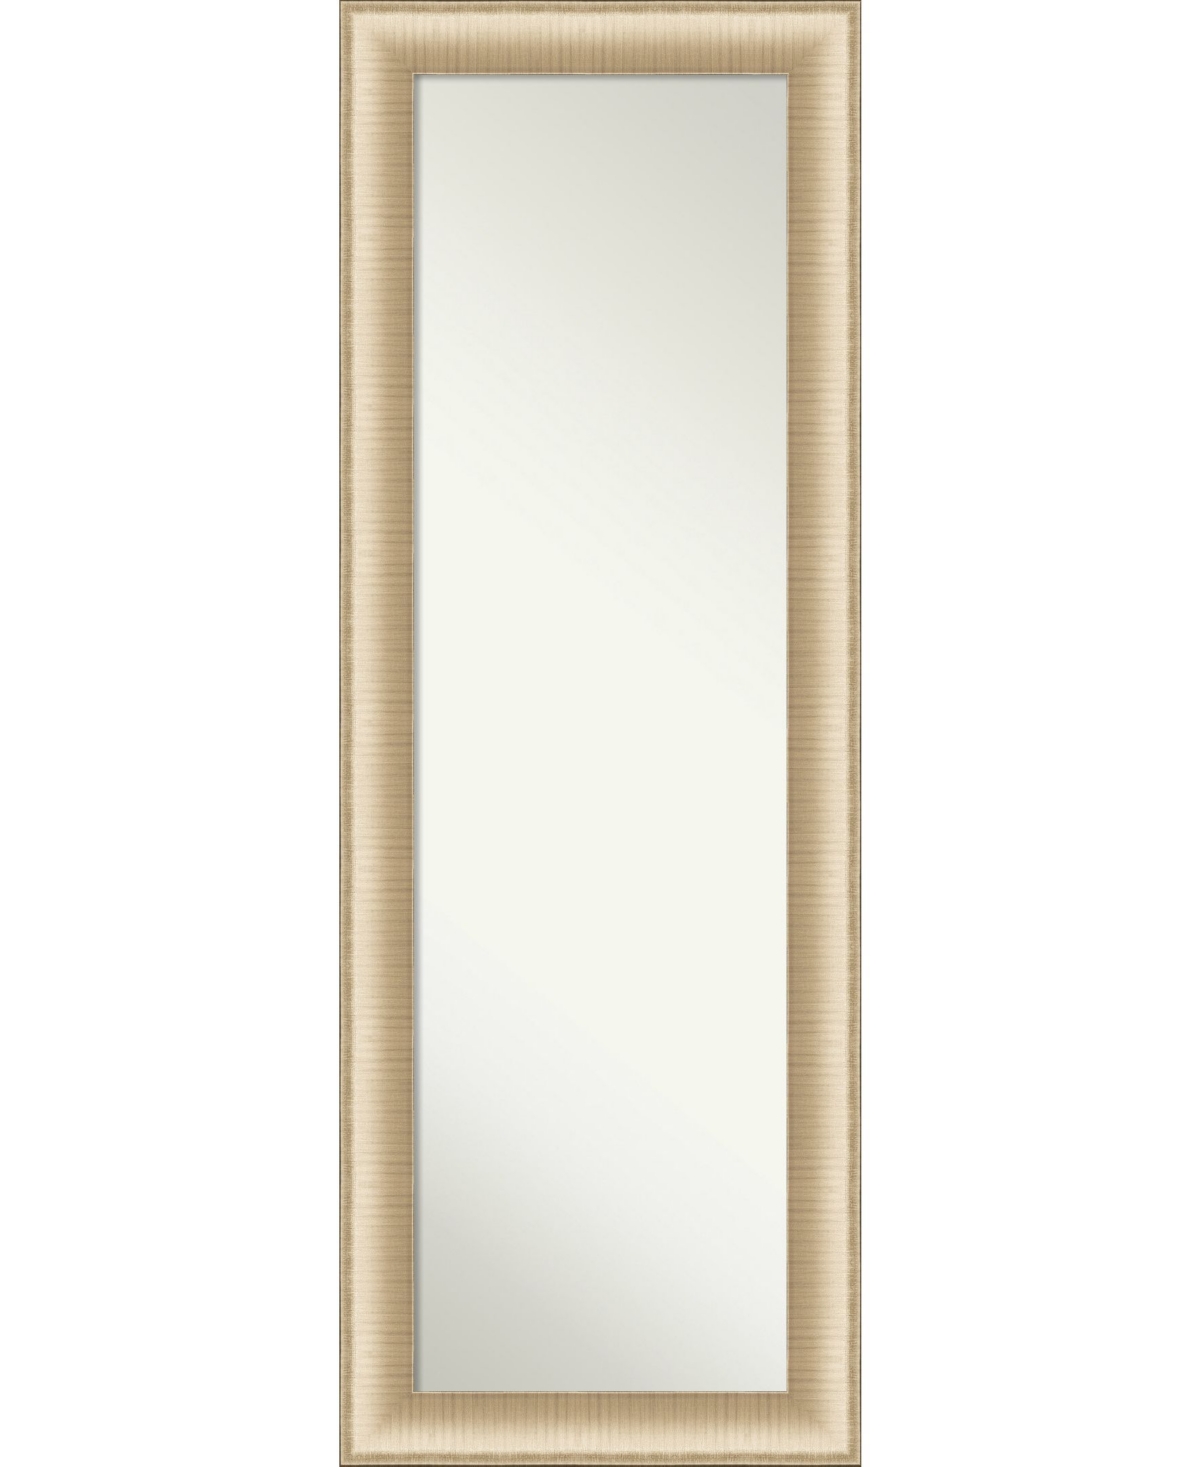 Elegant Brushed Honey on The Door Full Length Mirror, 18.75" x 52.75" - Gold